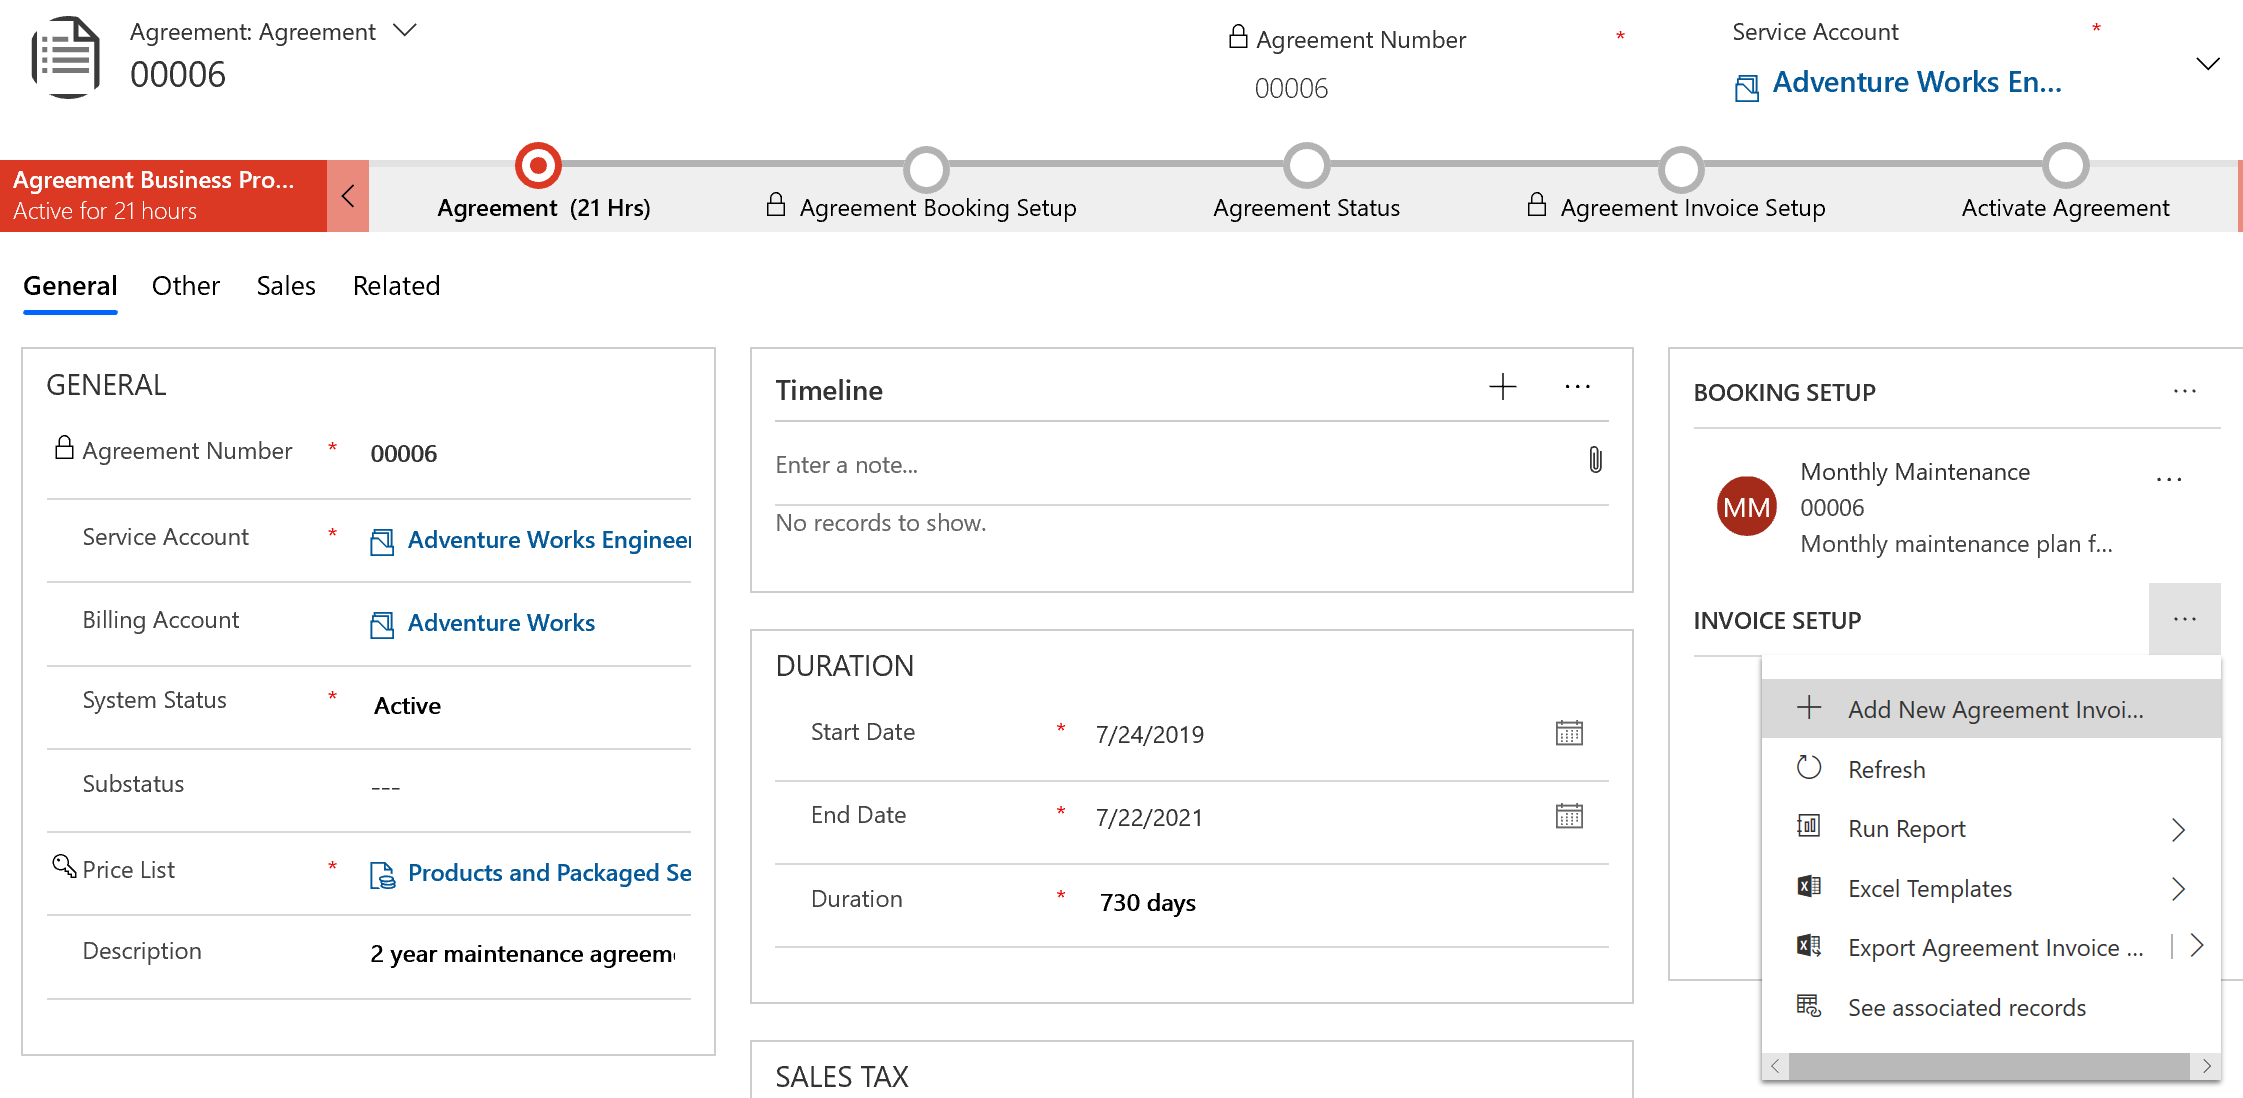 Снимок экрана соглашения, показывающий добавление нового параметра счета соглашения в настройке счета.